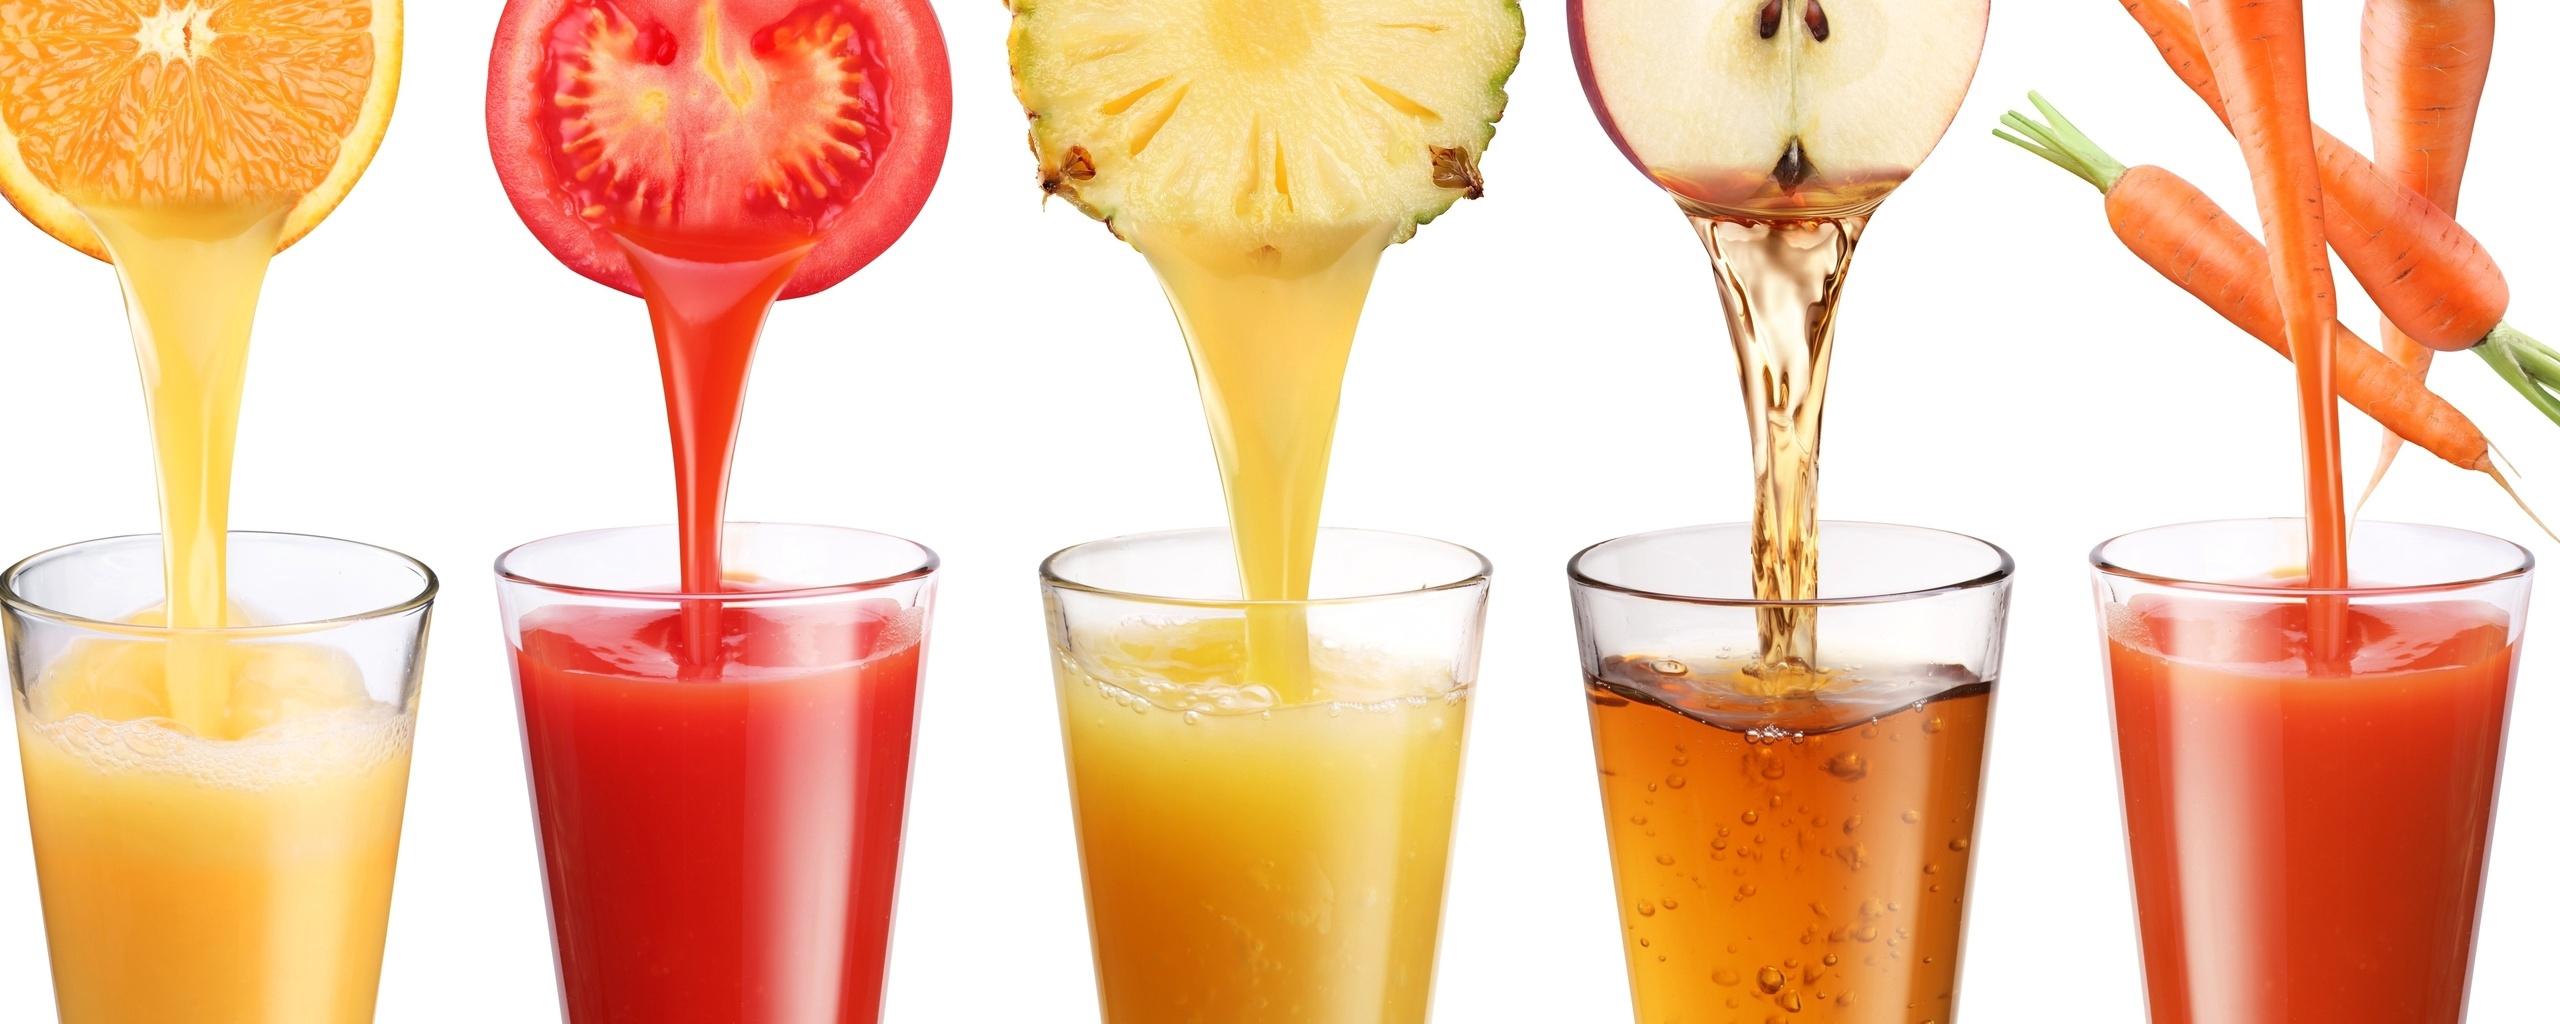 Download wallpaper 2560x1024 fruit, juice, freshly squeezed